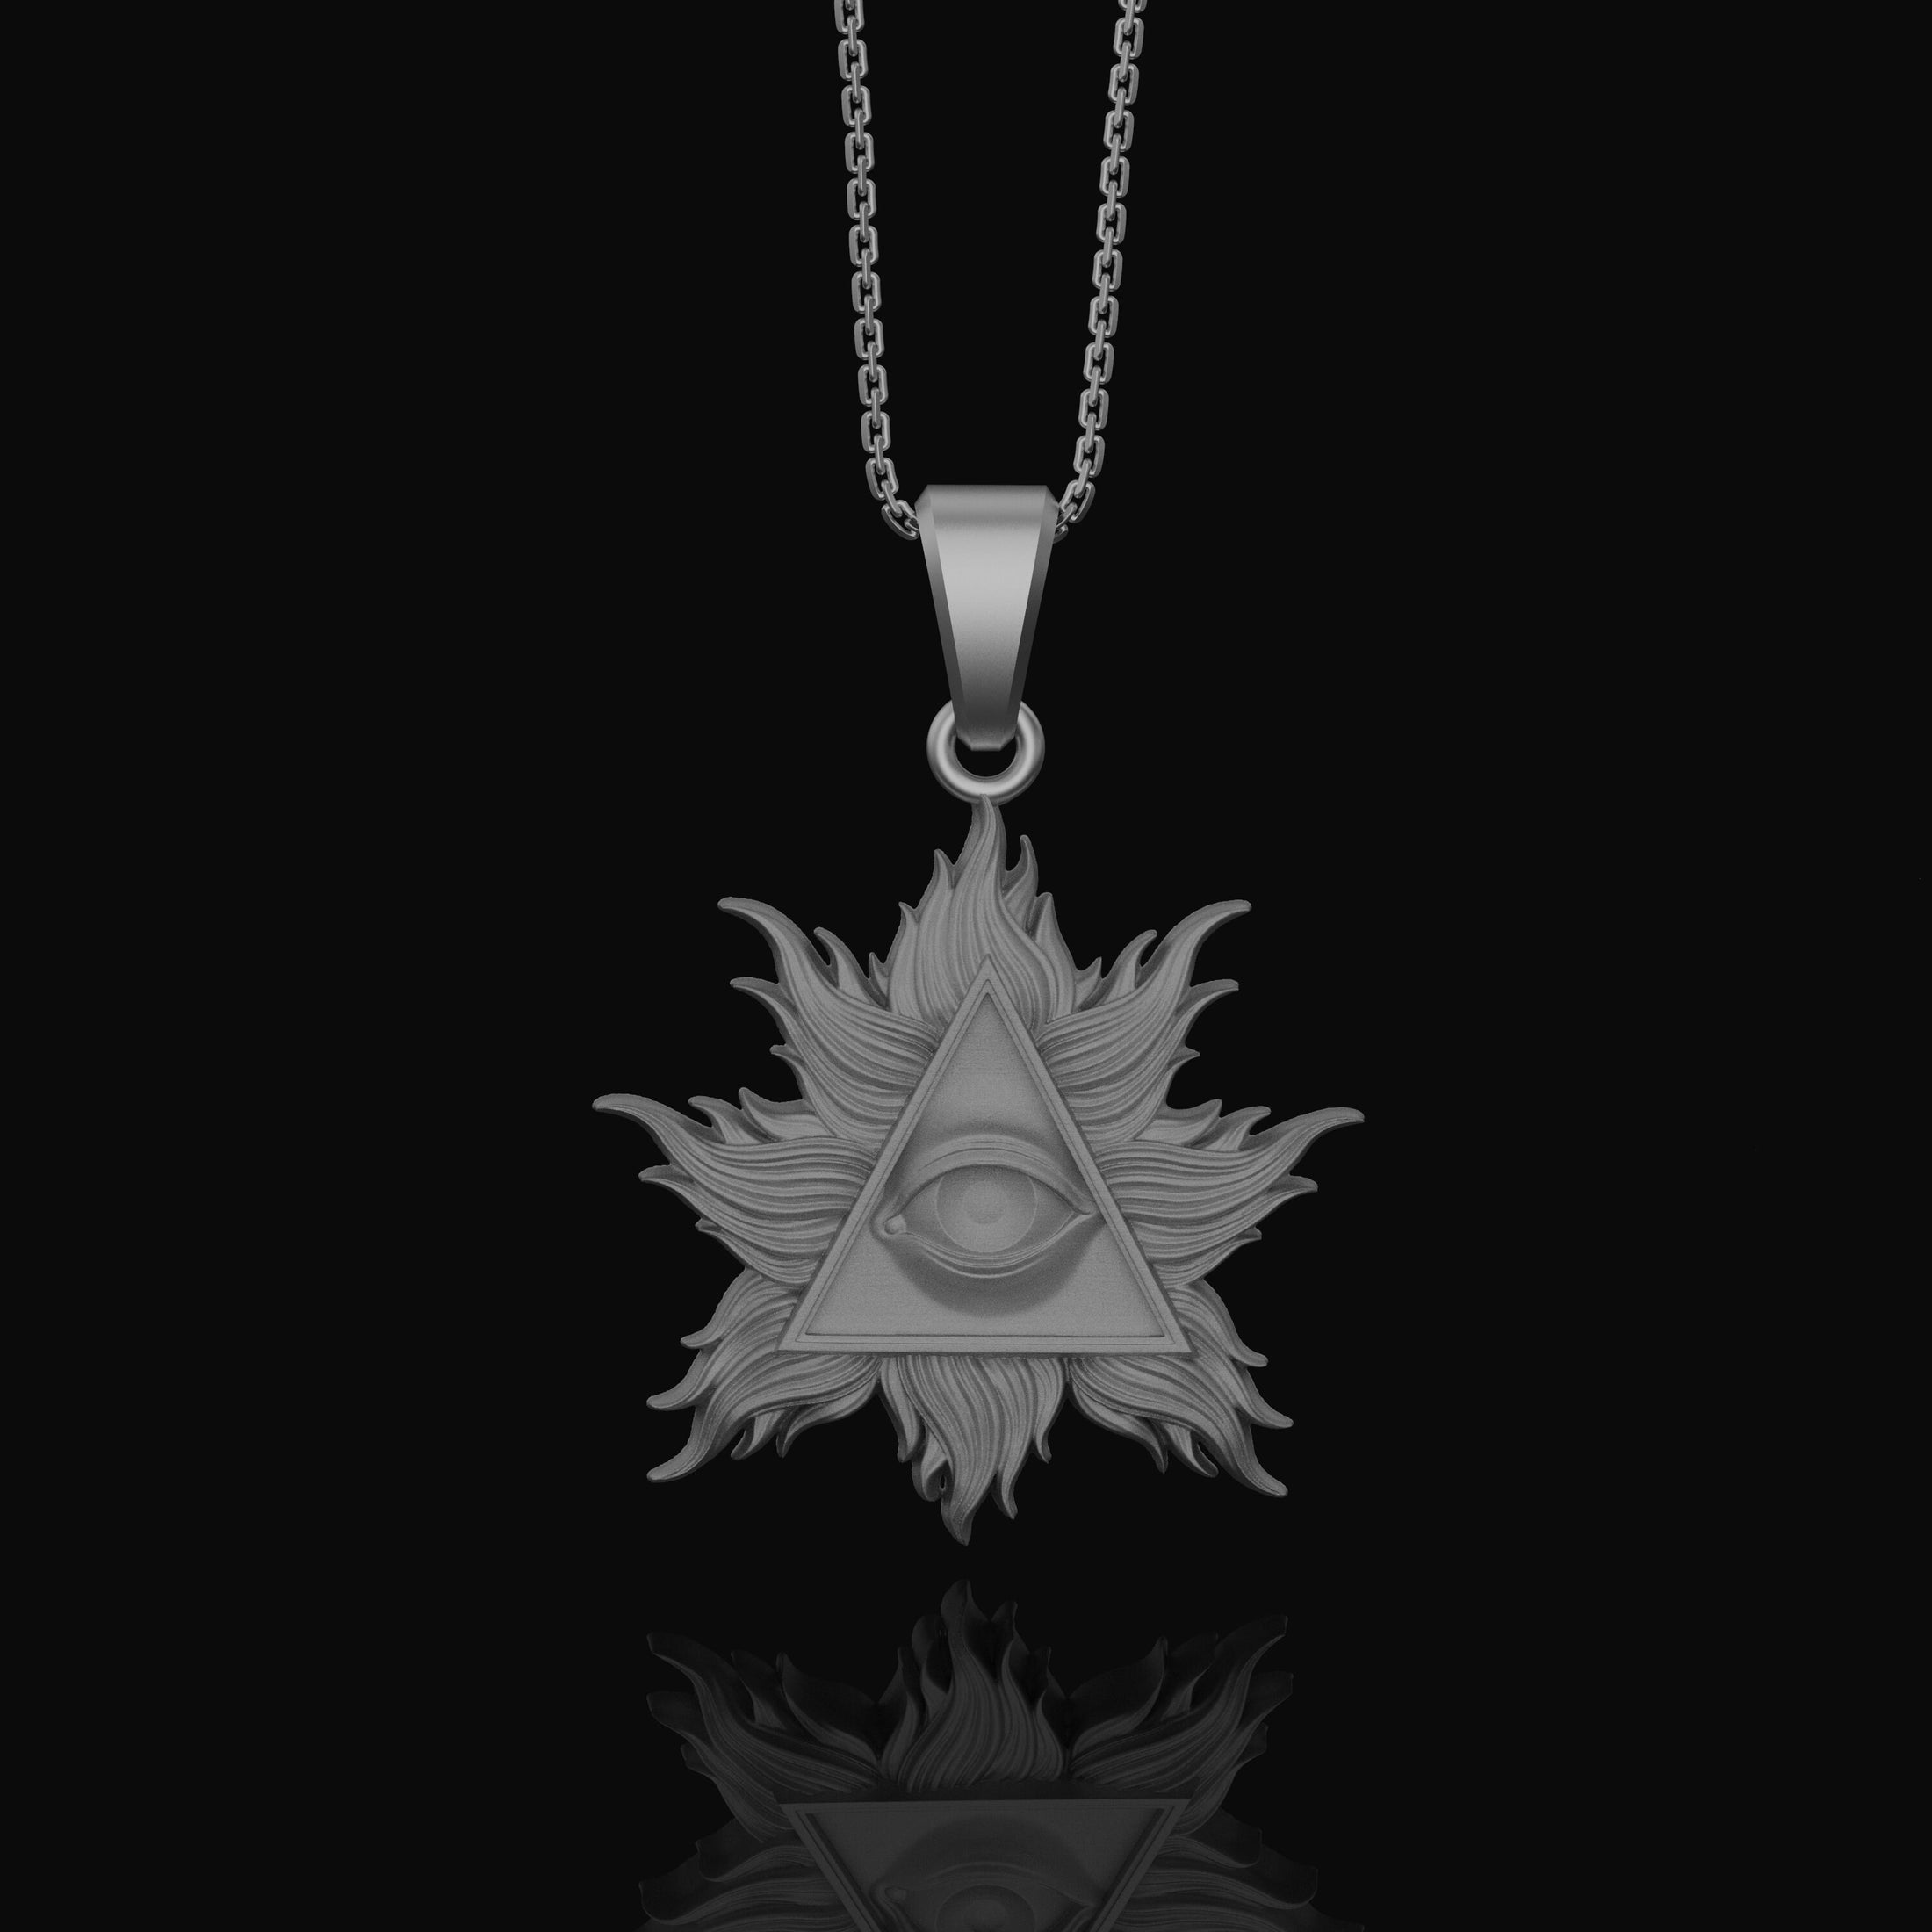 Silver Eye of Providence Charm - Two-Style Pyramid Pendant, Masonic Illuminati Jewelry, Mystical Gift